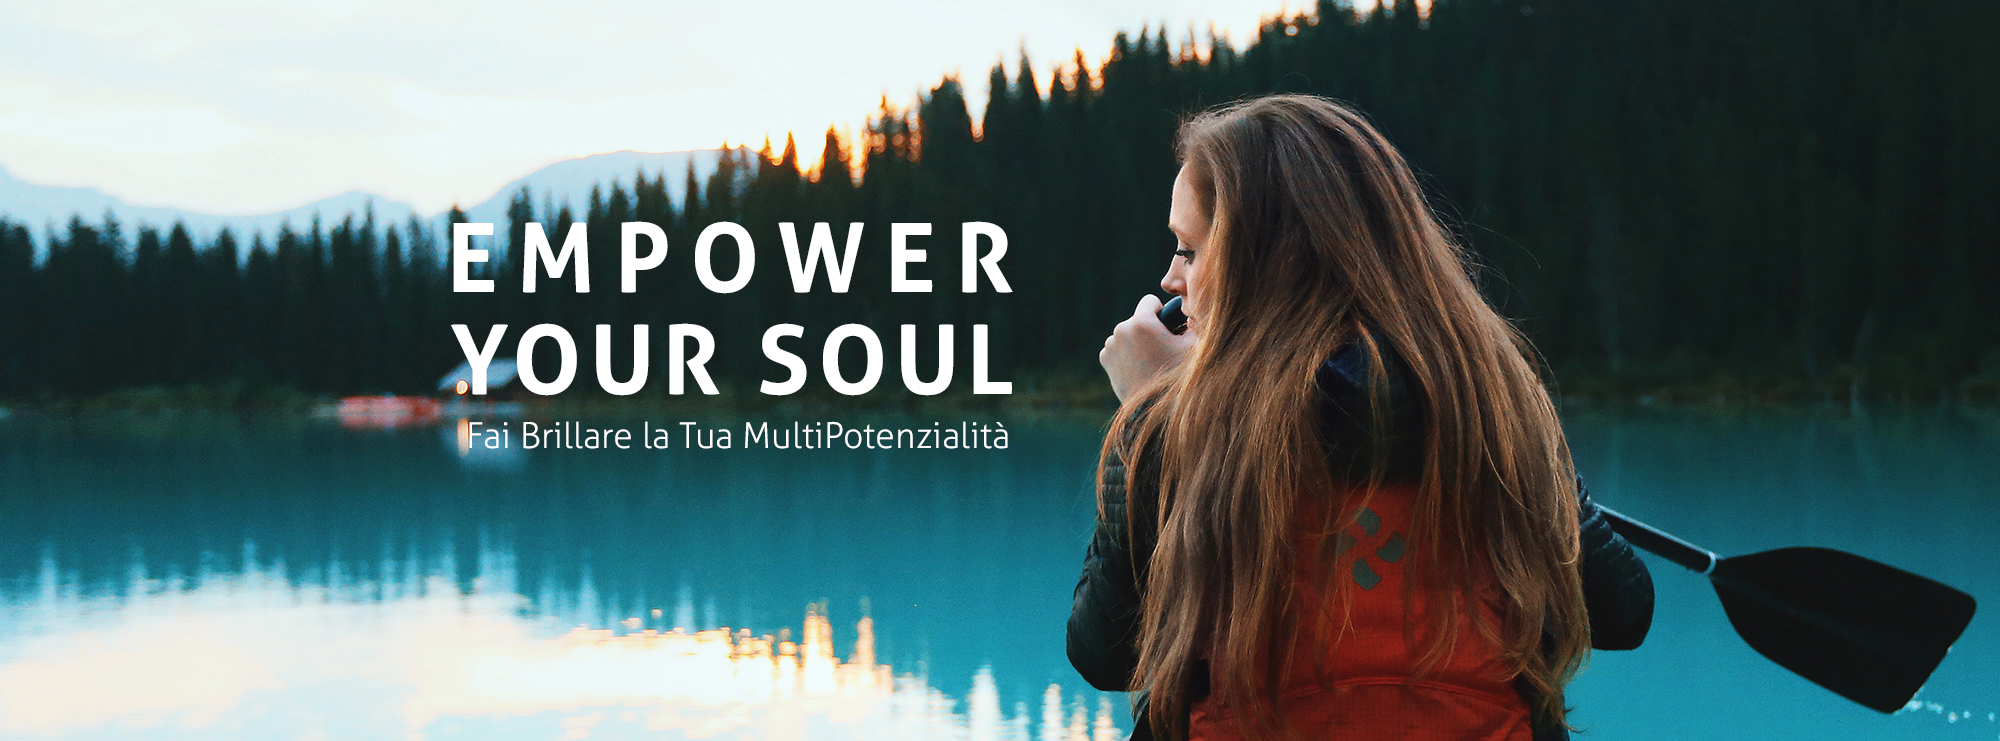 enpower your soul